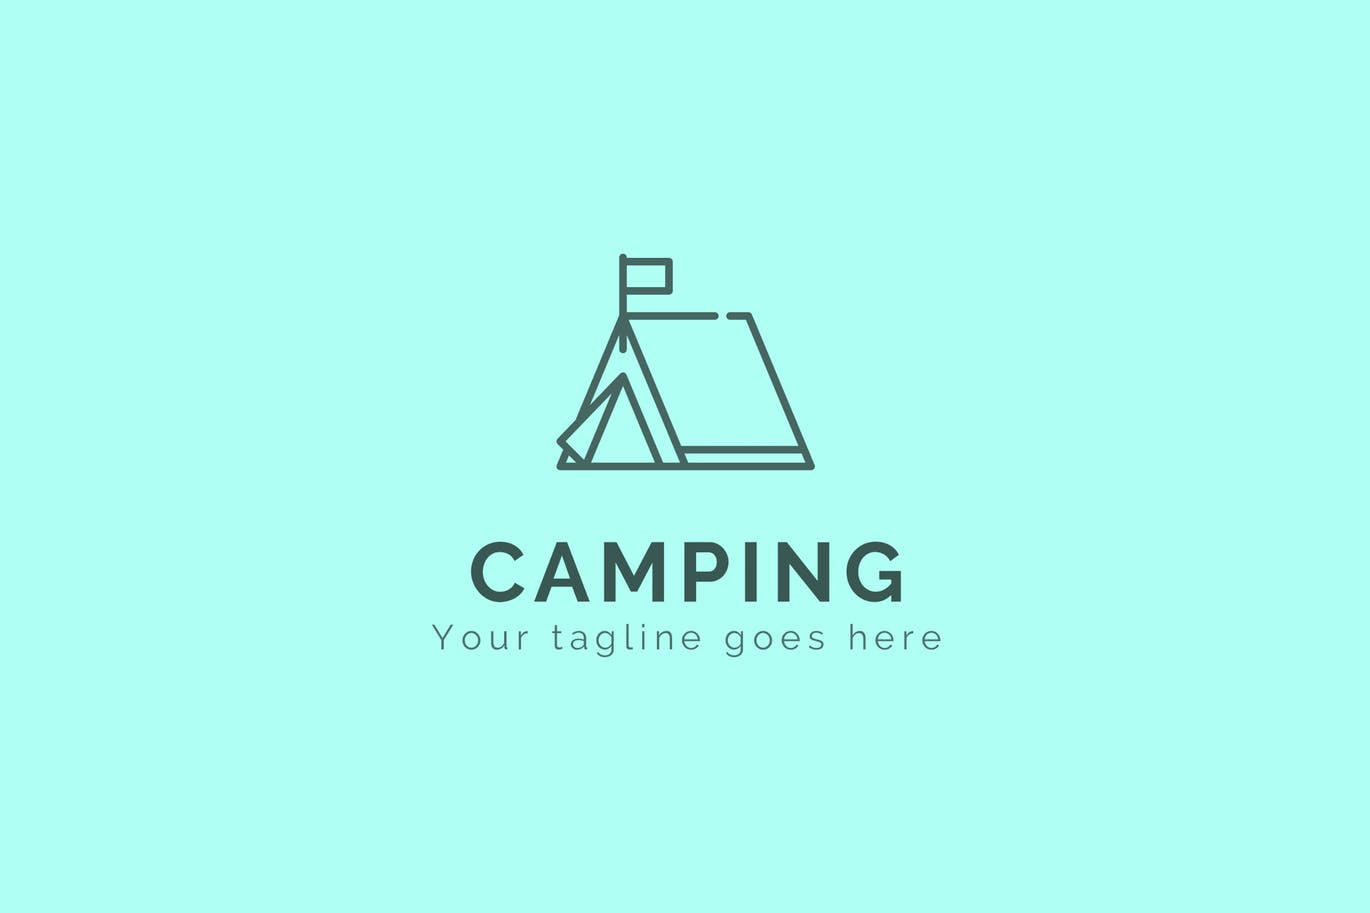 登山户外品牌露营图形Logo设计第一素材精选模板 Camping – Premium Logo Template插图